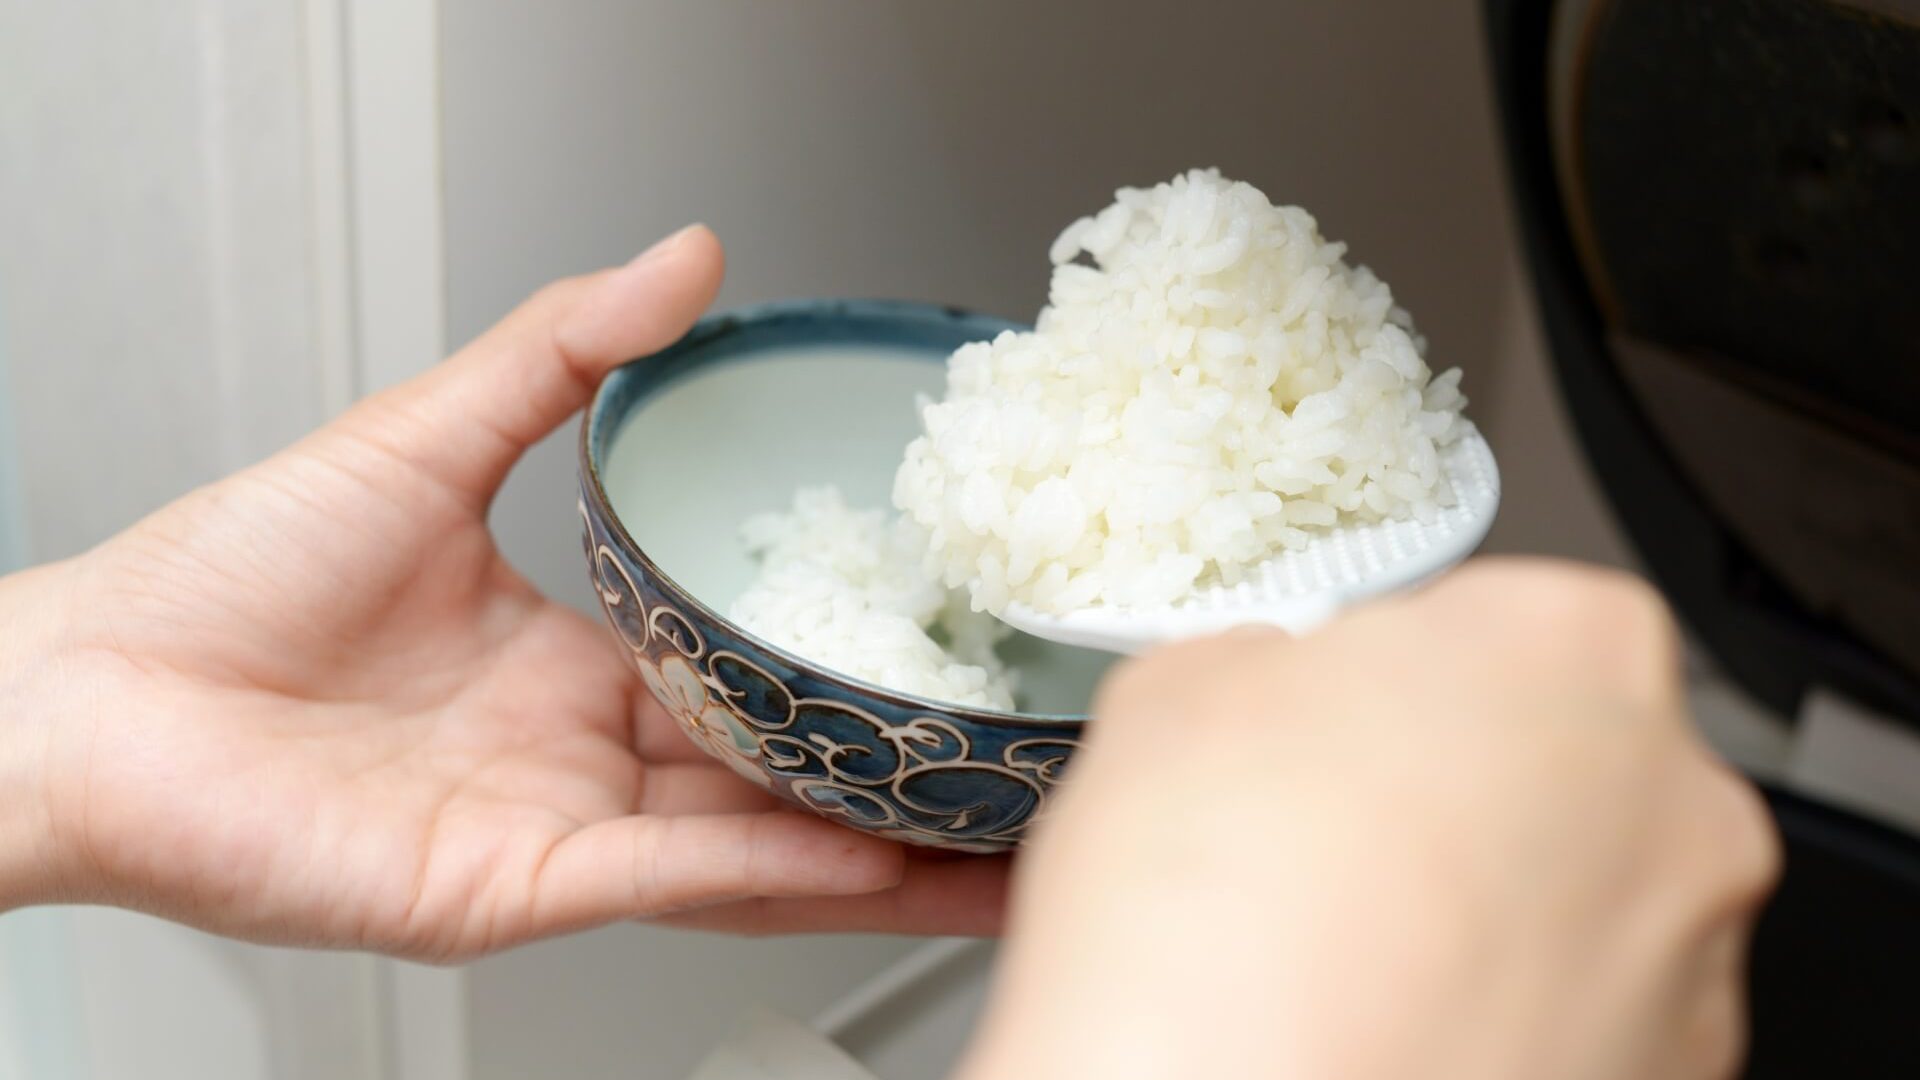 炊飯器で炊きあがったお米を茶碗に入れている画像